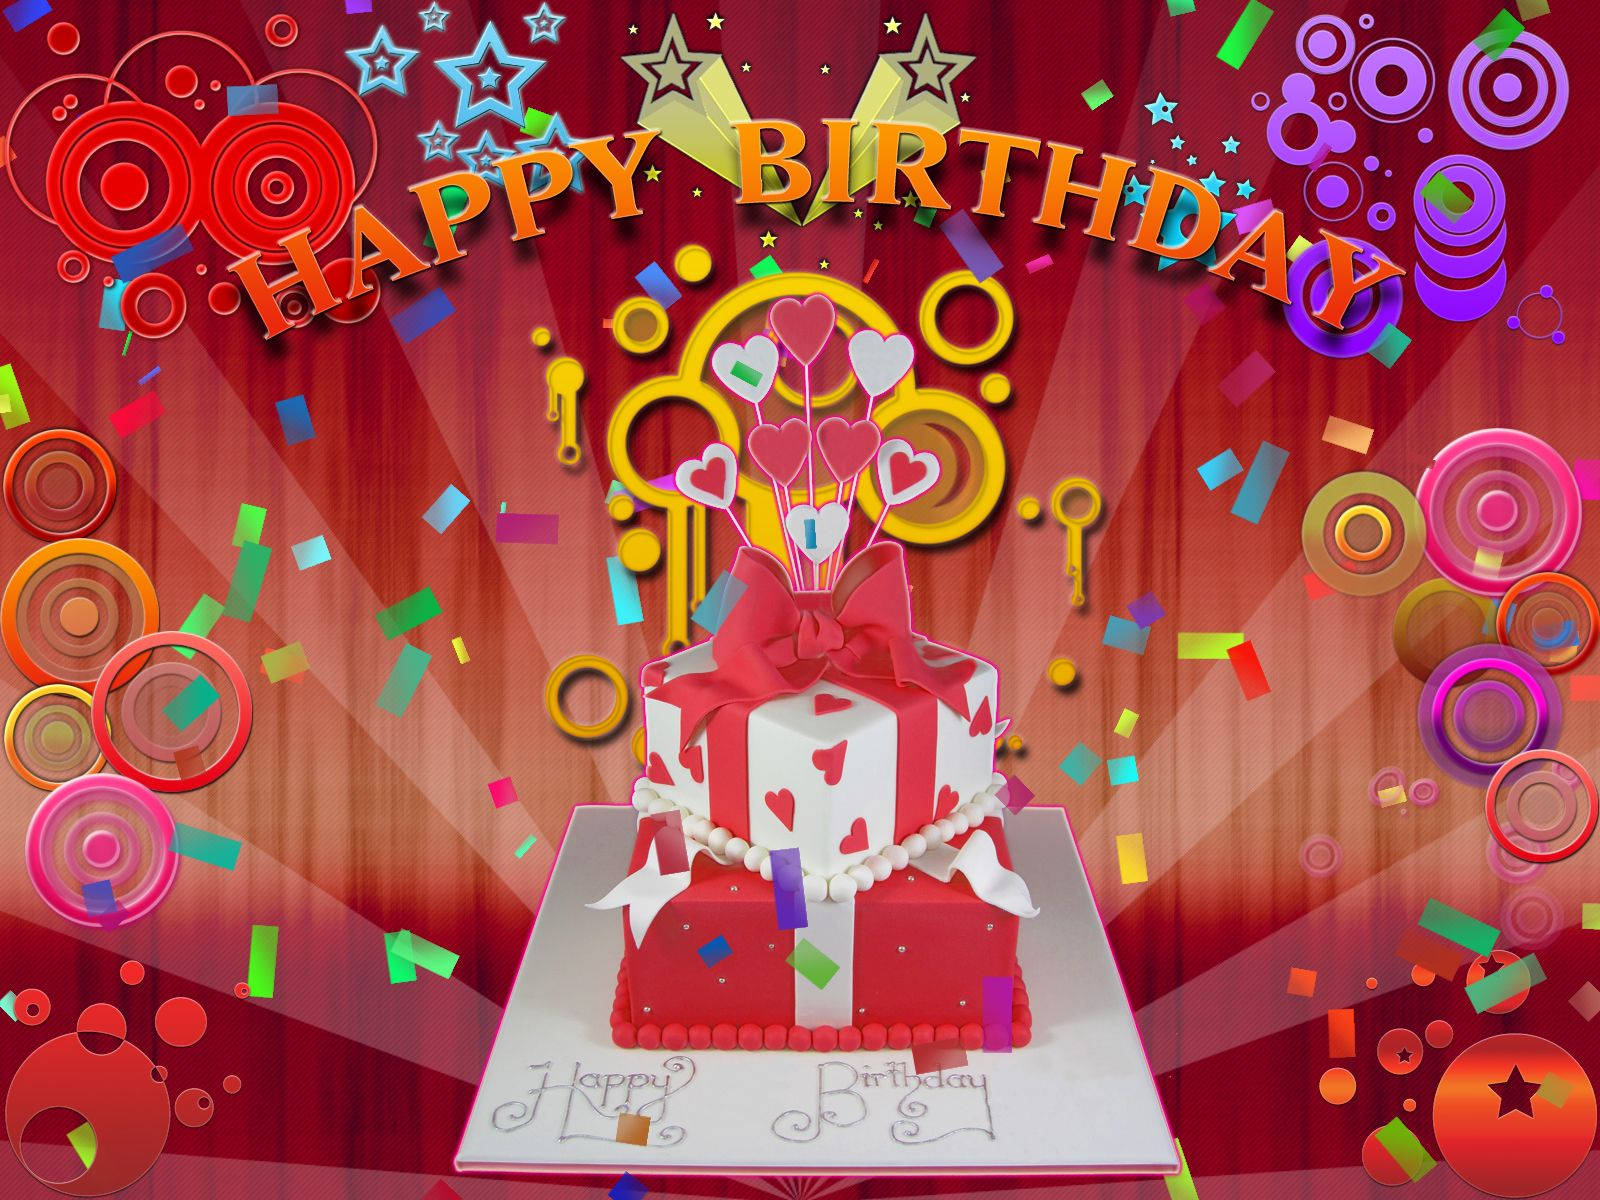 Happy Birthday Digital Art Background